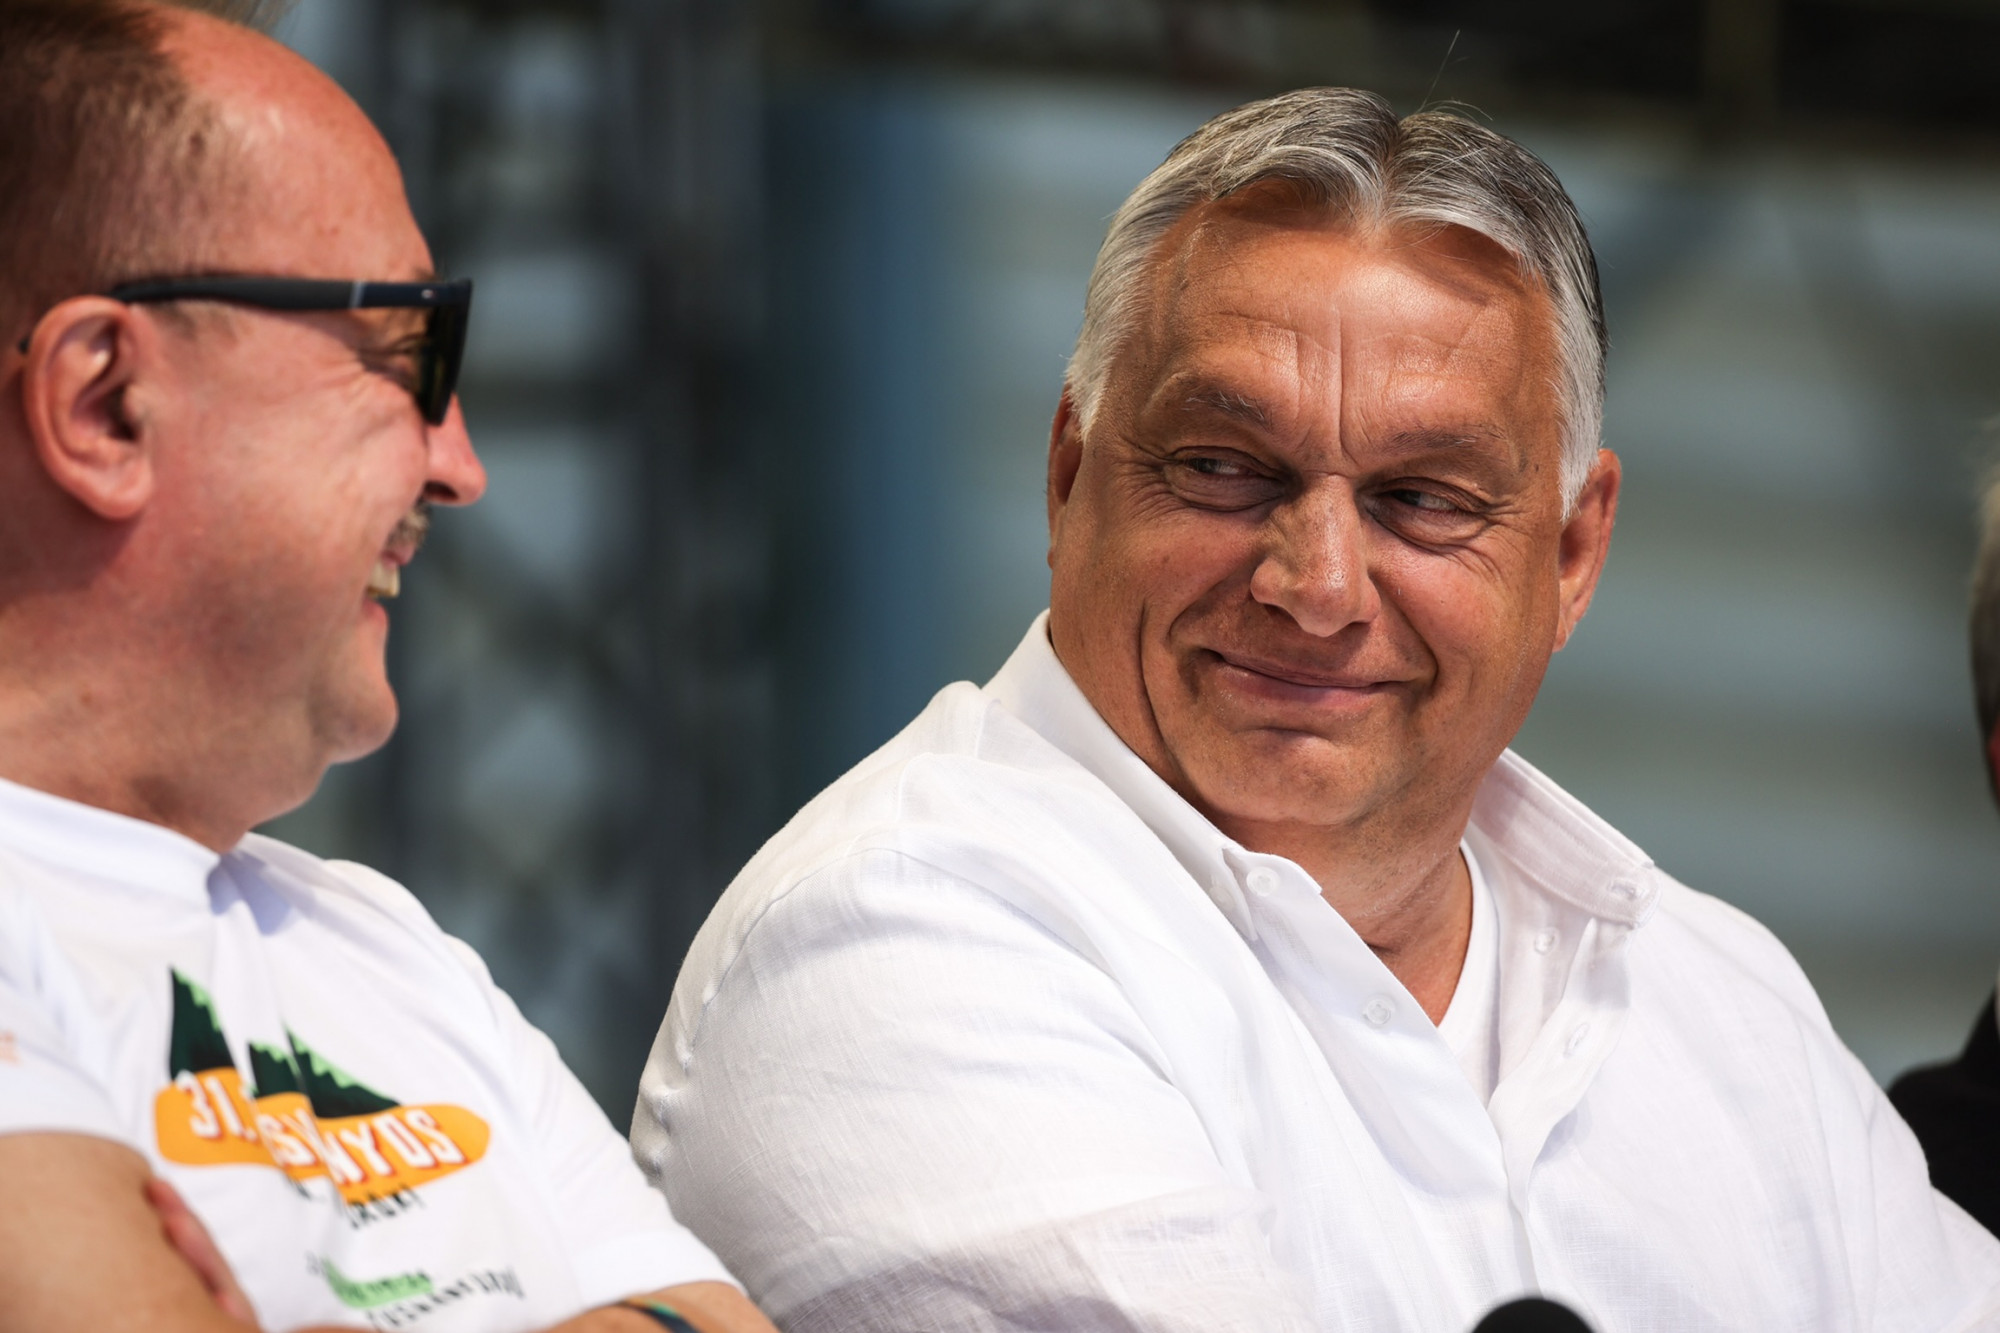 Orbán beszédére hivatkozva lemondta egy magyar társaság lefoglalt szállását egy német lakáskiadó, mondván, többé nem akar magyarokat fogadni